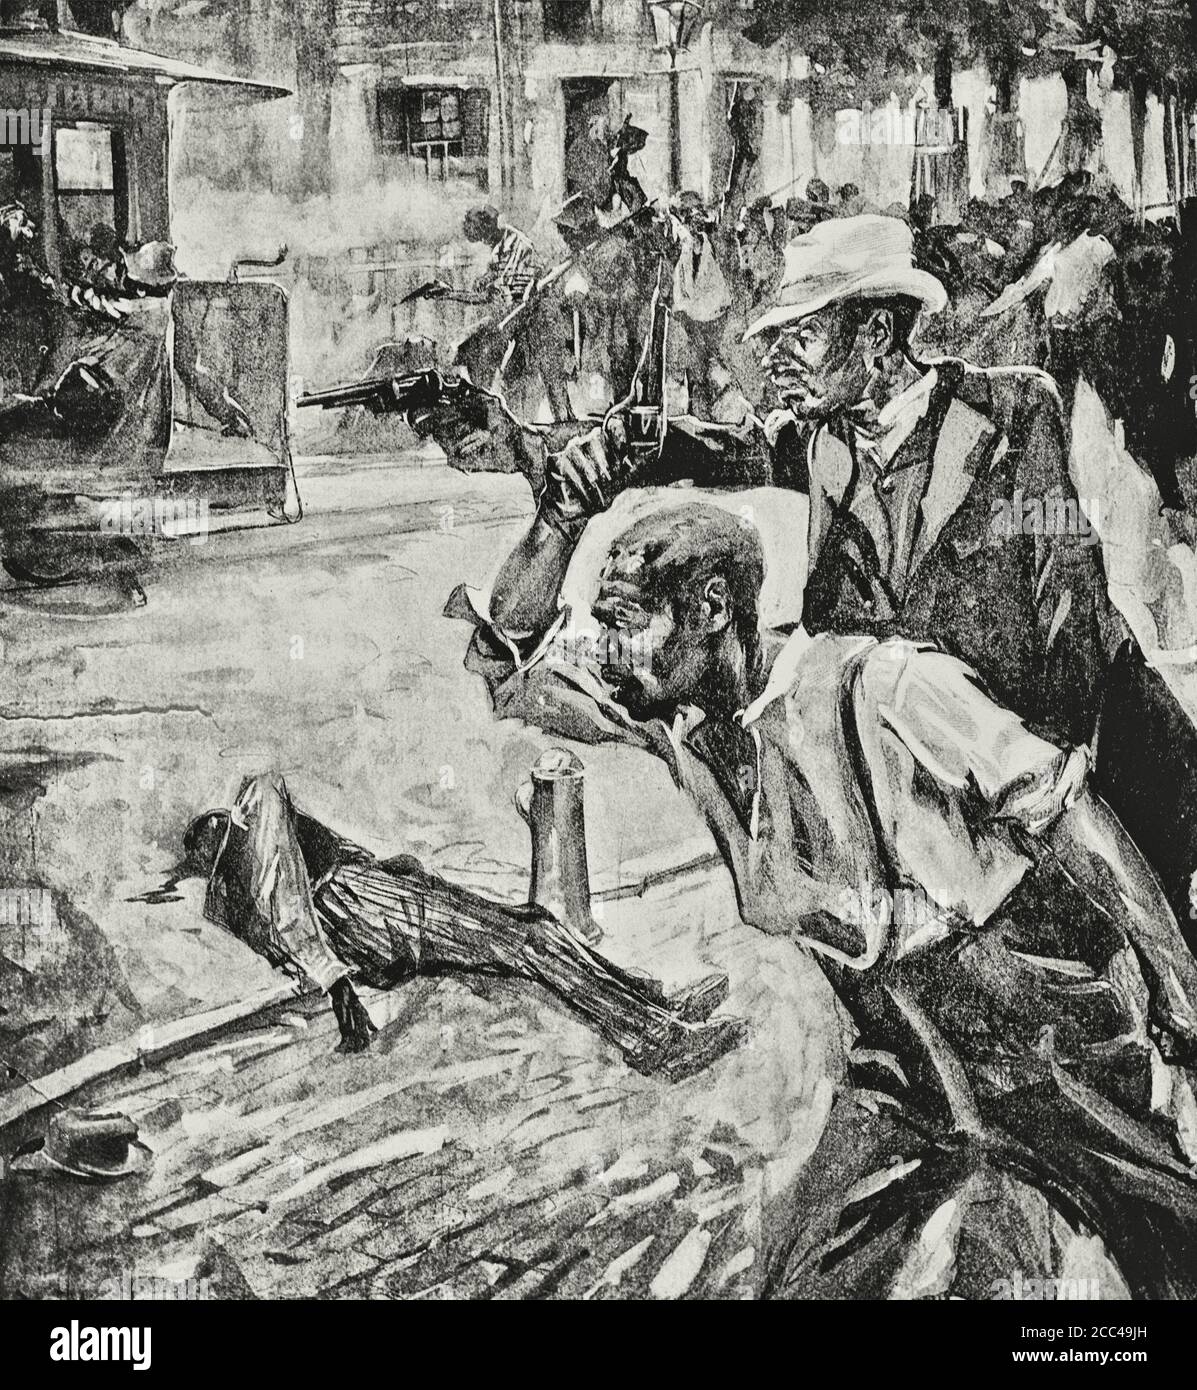 Wilmington, Carolina del Norte, 1898: Hombres negros disparando pistolas en la calle (dibujo) Foto de stock